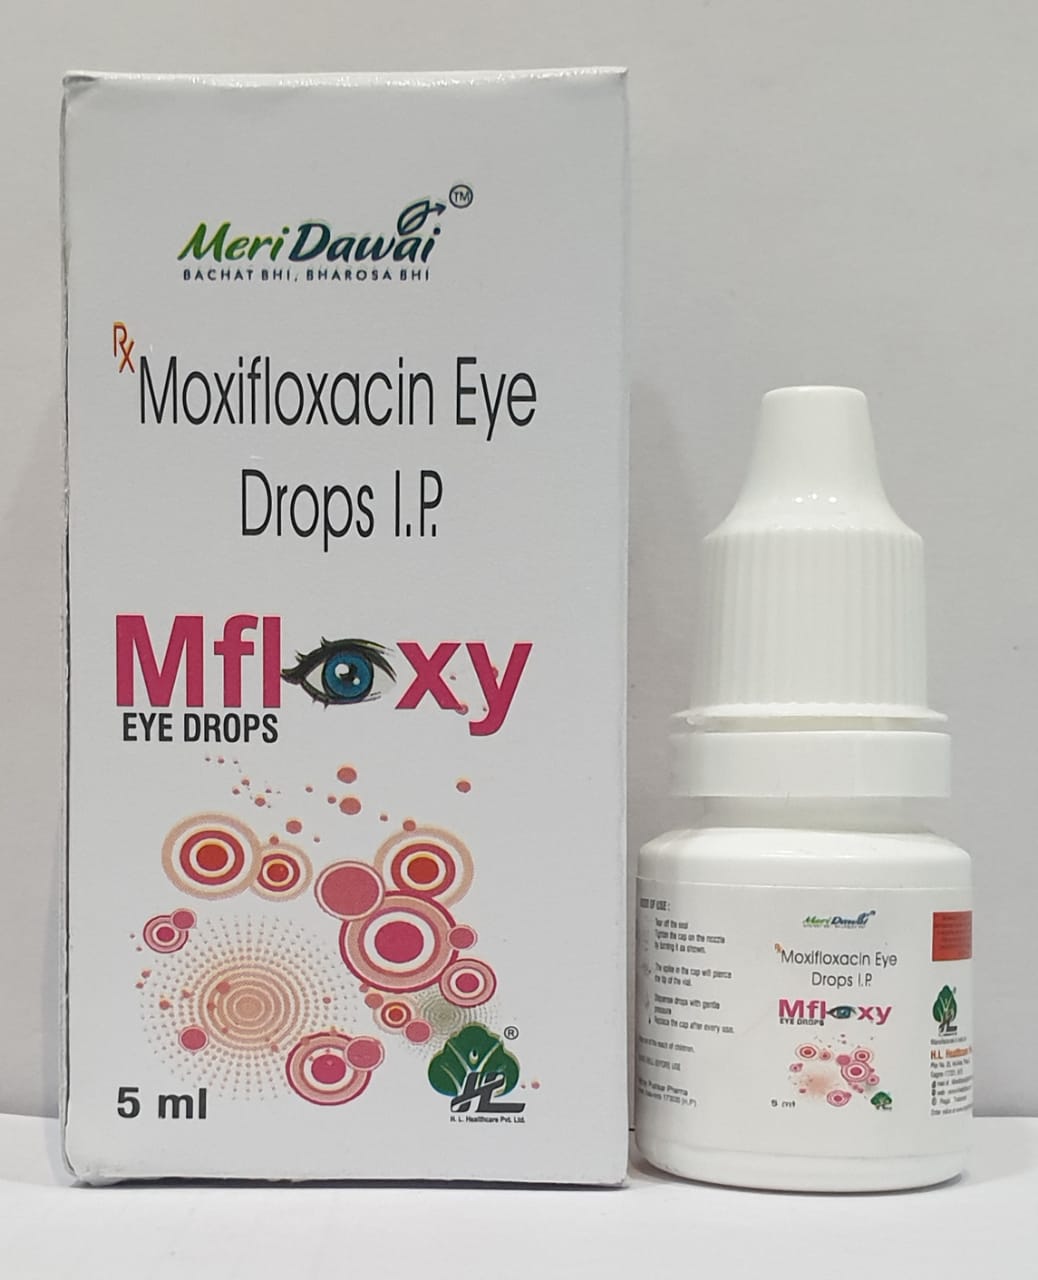 Moxifloxacin HCl and Moxifloxacin Drops